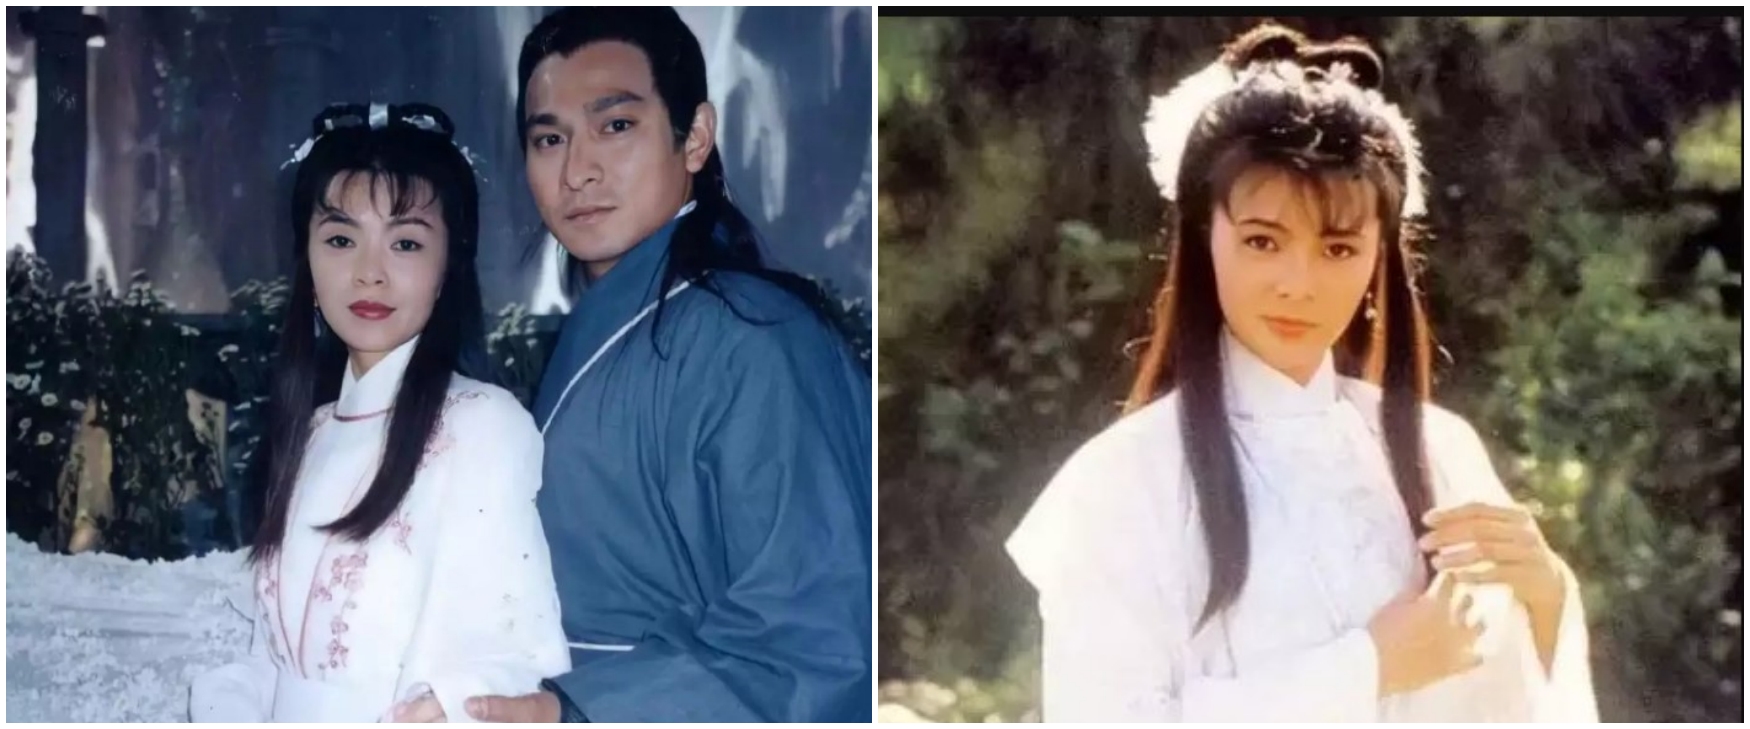 Pesonanya tak pudar di usia 63, ini 11 potret terbaru Bibi Lung kekasih Andy Lau di Pendekar Rajawali